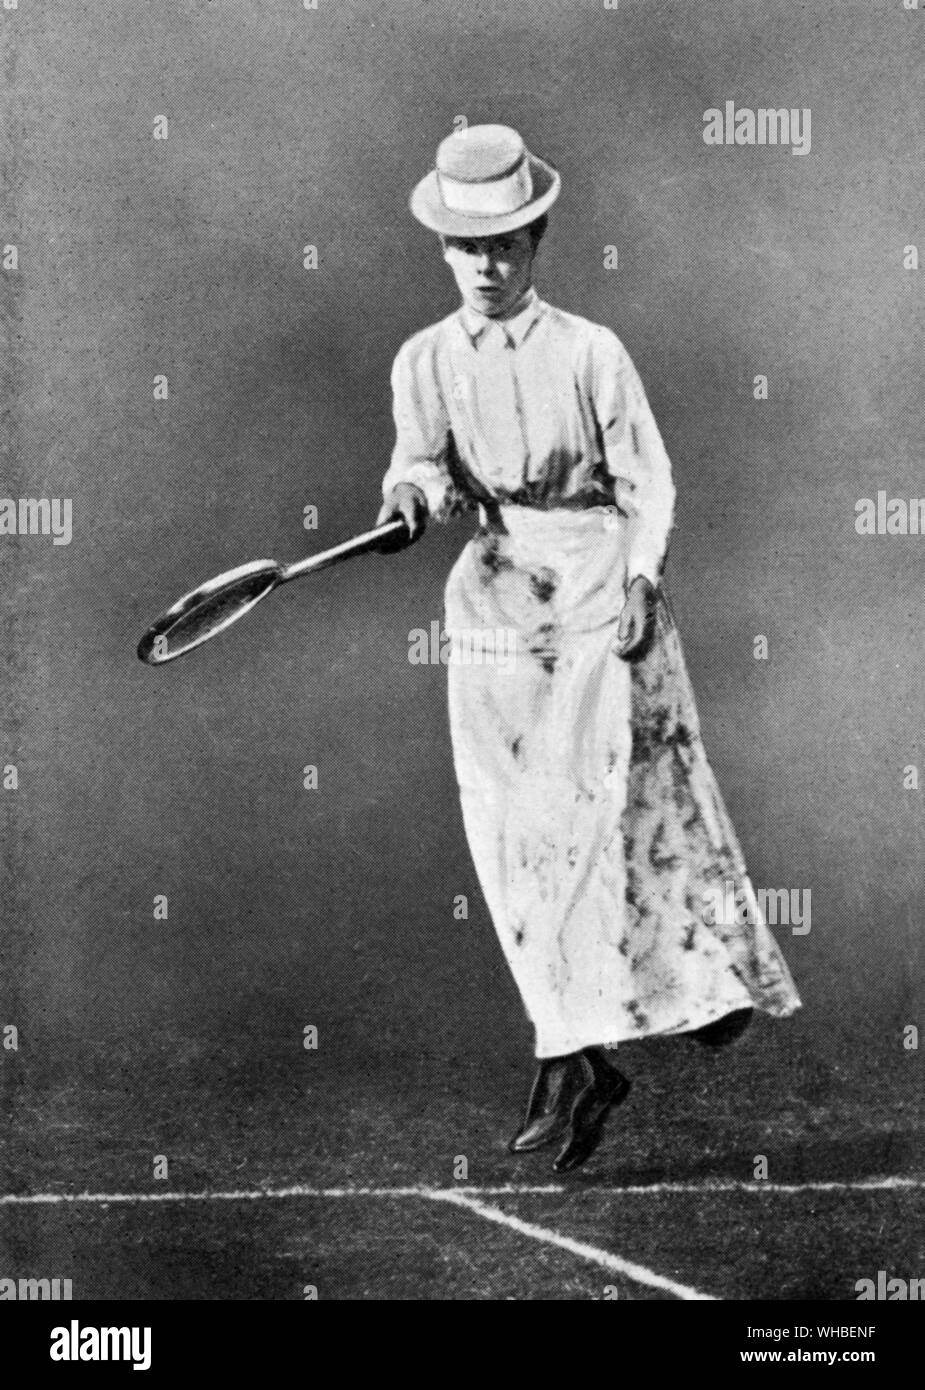 Miss L. Reis 1890 - Helena Bertha Gnade Reis, Lena Reis (geb. Juni 21, 1866 - Juni 21, 1907) war der einzige weibliche Irischen Tennisspieler ein singles Titel in Wimbledon zu gewinnen. Lena, (Helena Bertha Gnade geboren) war der zweite jüngste von sieben Kindern. Lena, die regelmäßig zusammengeschlossen, um ihre Schwester Annie am Tennis, das Spiel erlernte zu Hause, wo ihre Eltern in ihrem großen Garten unterhalten bei Marlhill in den 1880er Jahren. Stockfoto